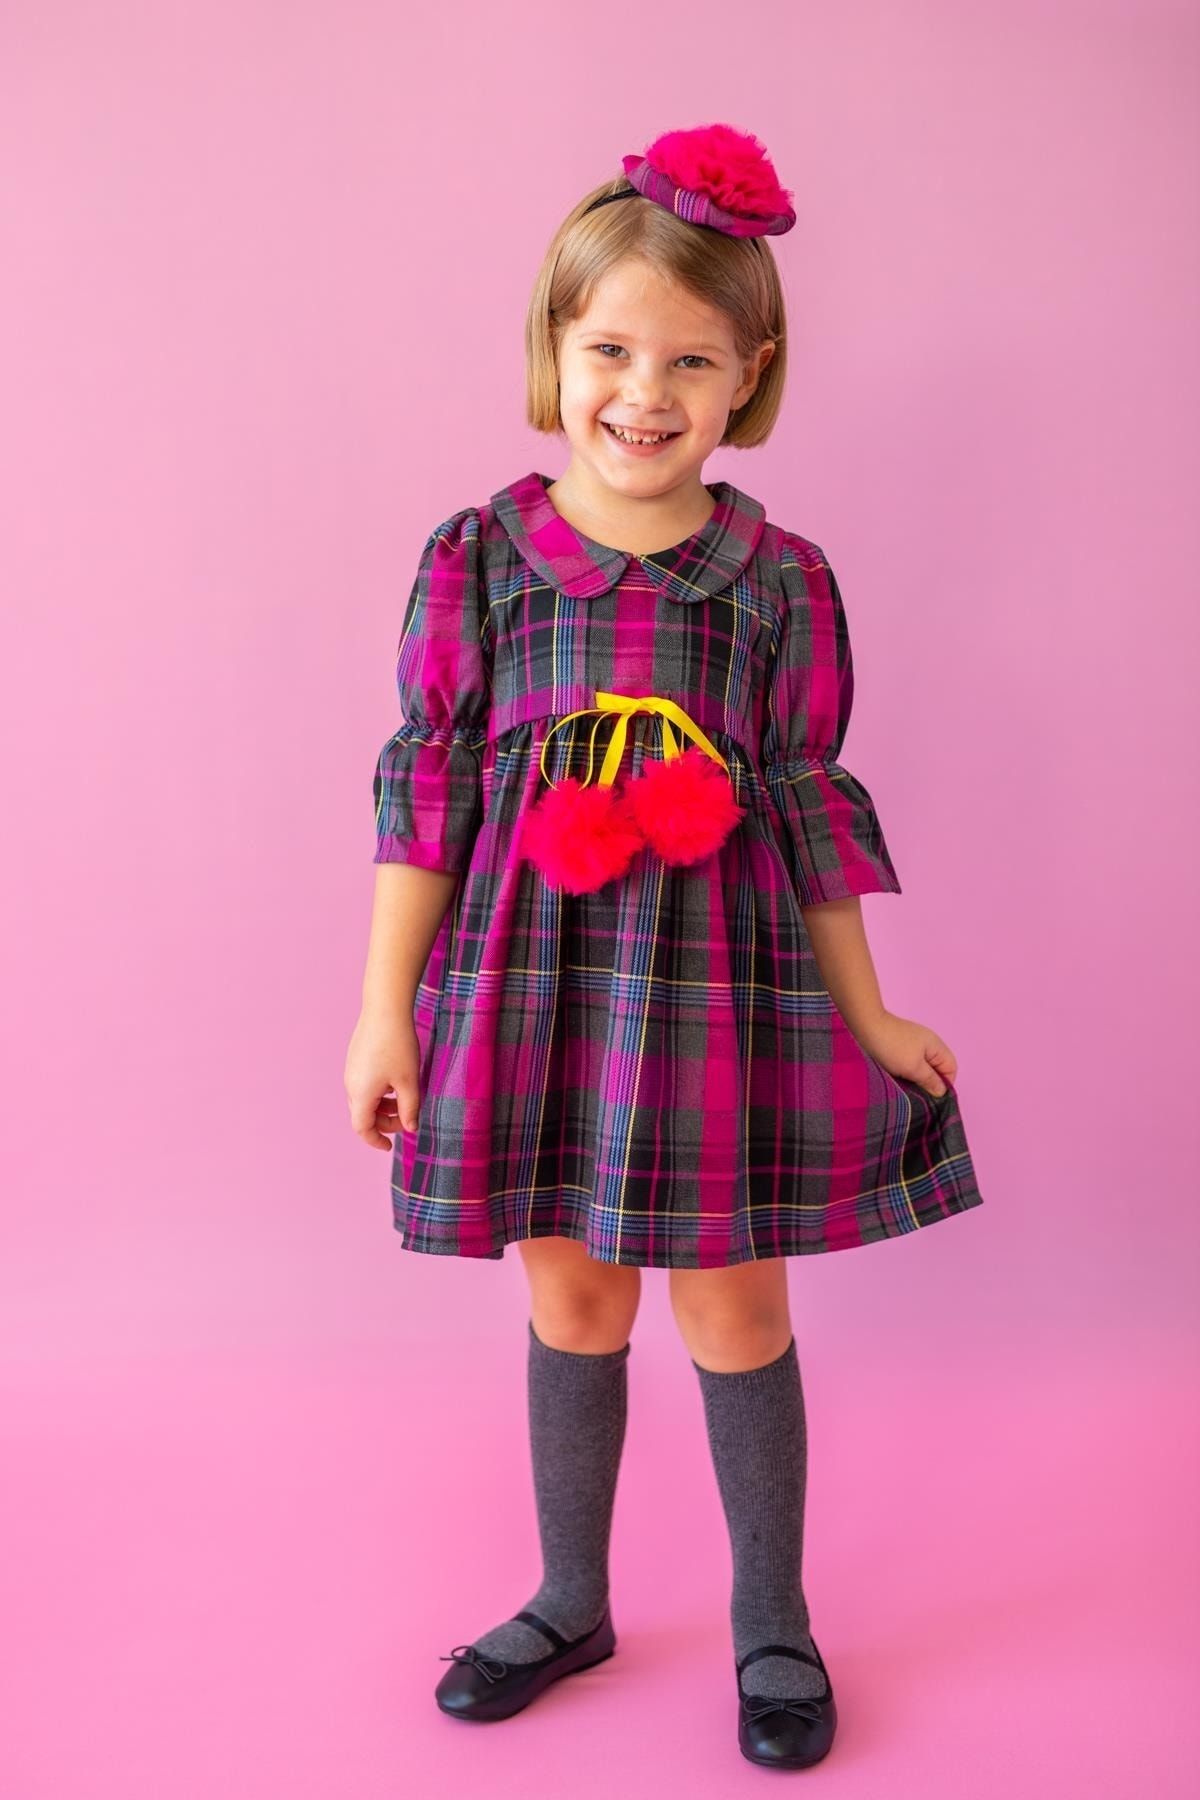 Pixy Love Fuşya Kız Çocuk Elbise Candy Scotch